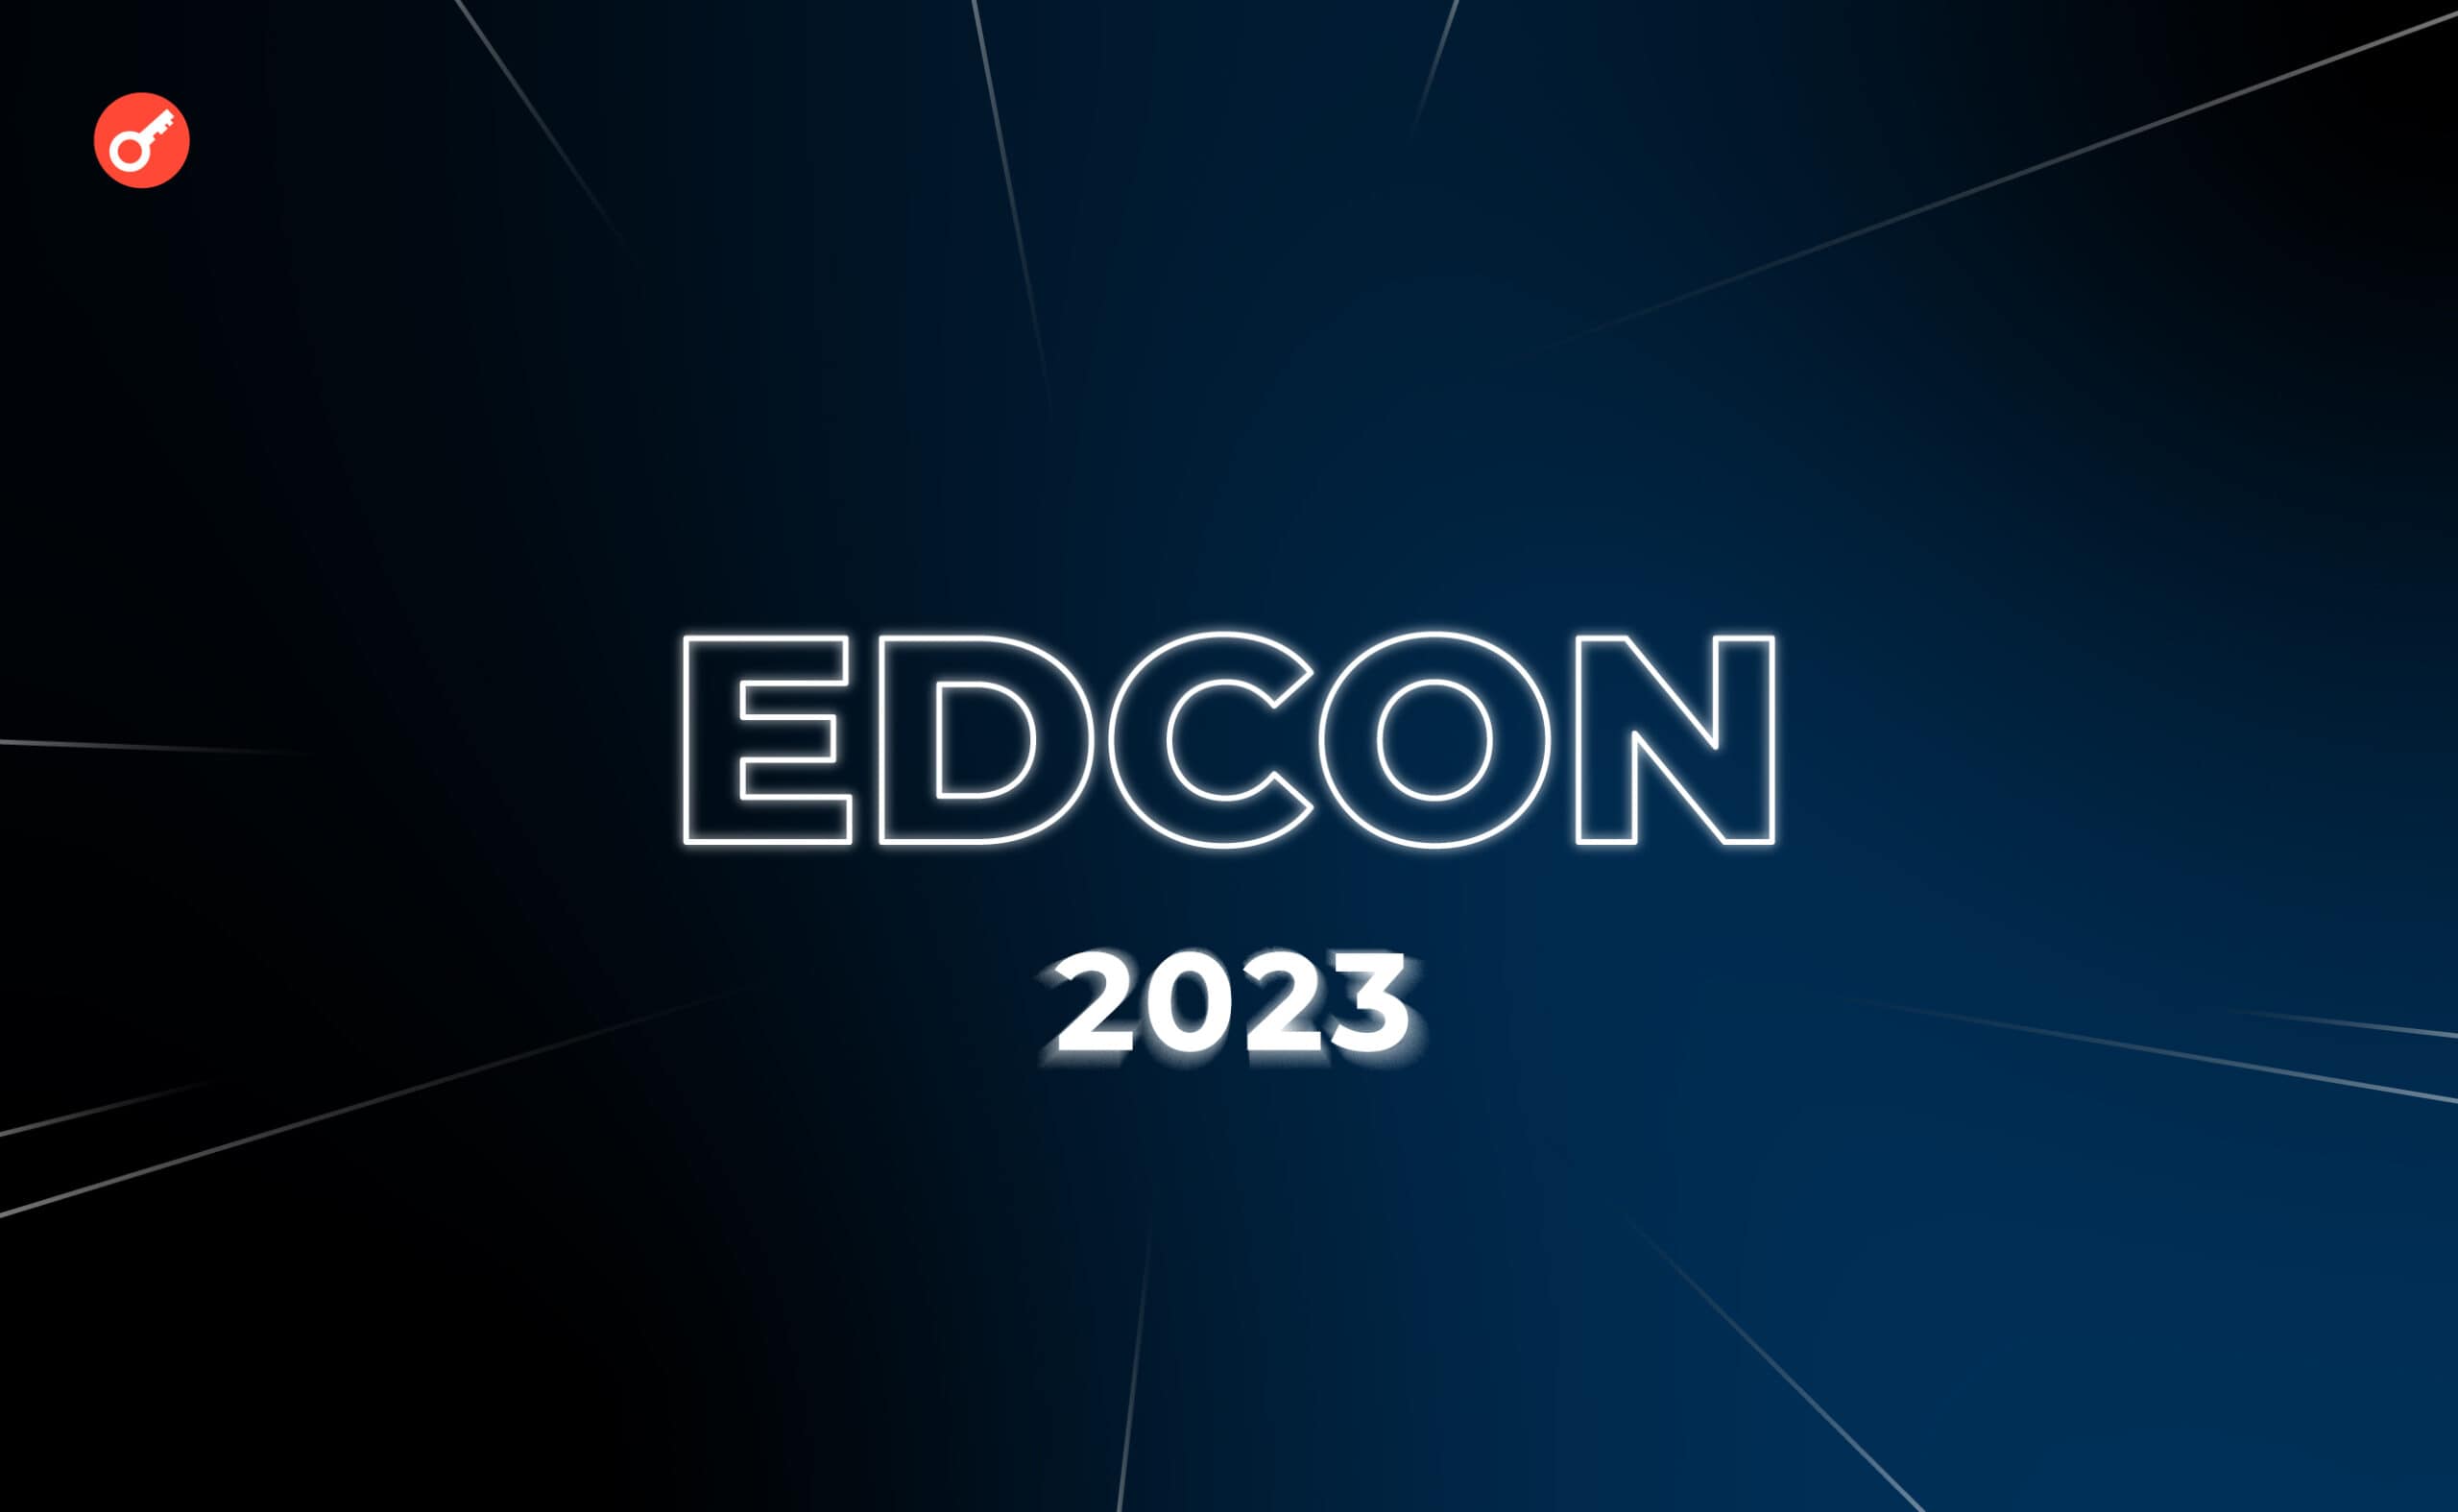 EDCON 2023: як це було і про що говорив Віталік Бутерін? Головний колаж статті.